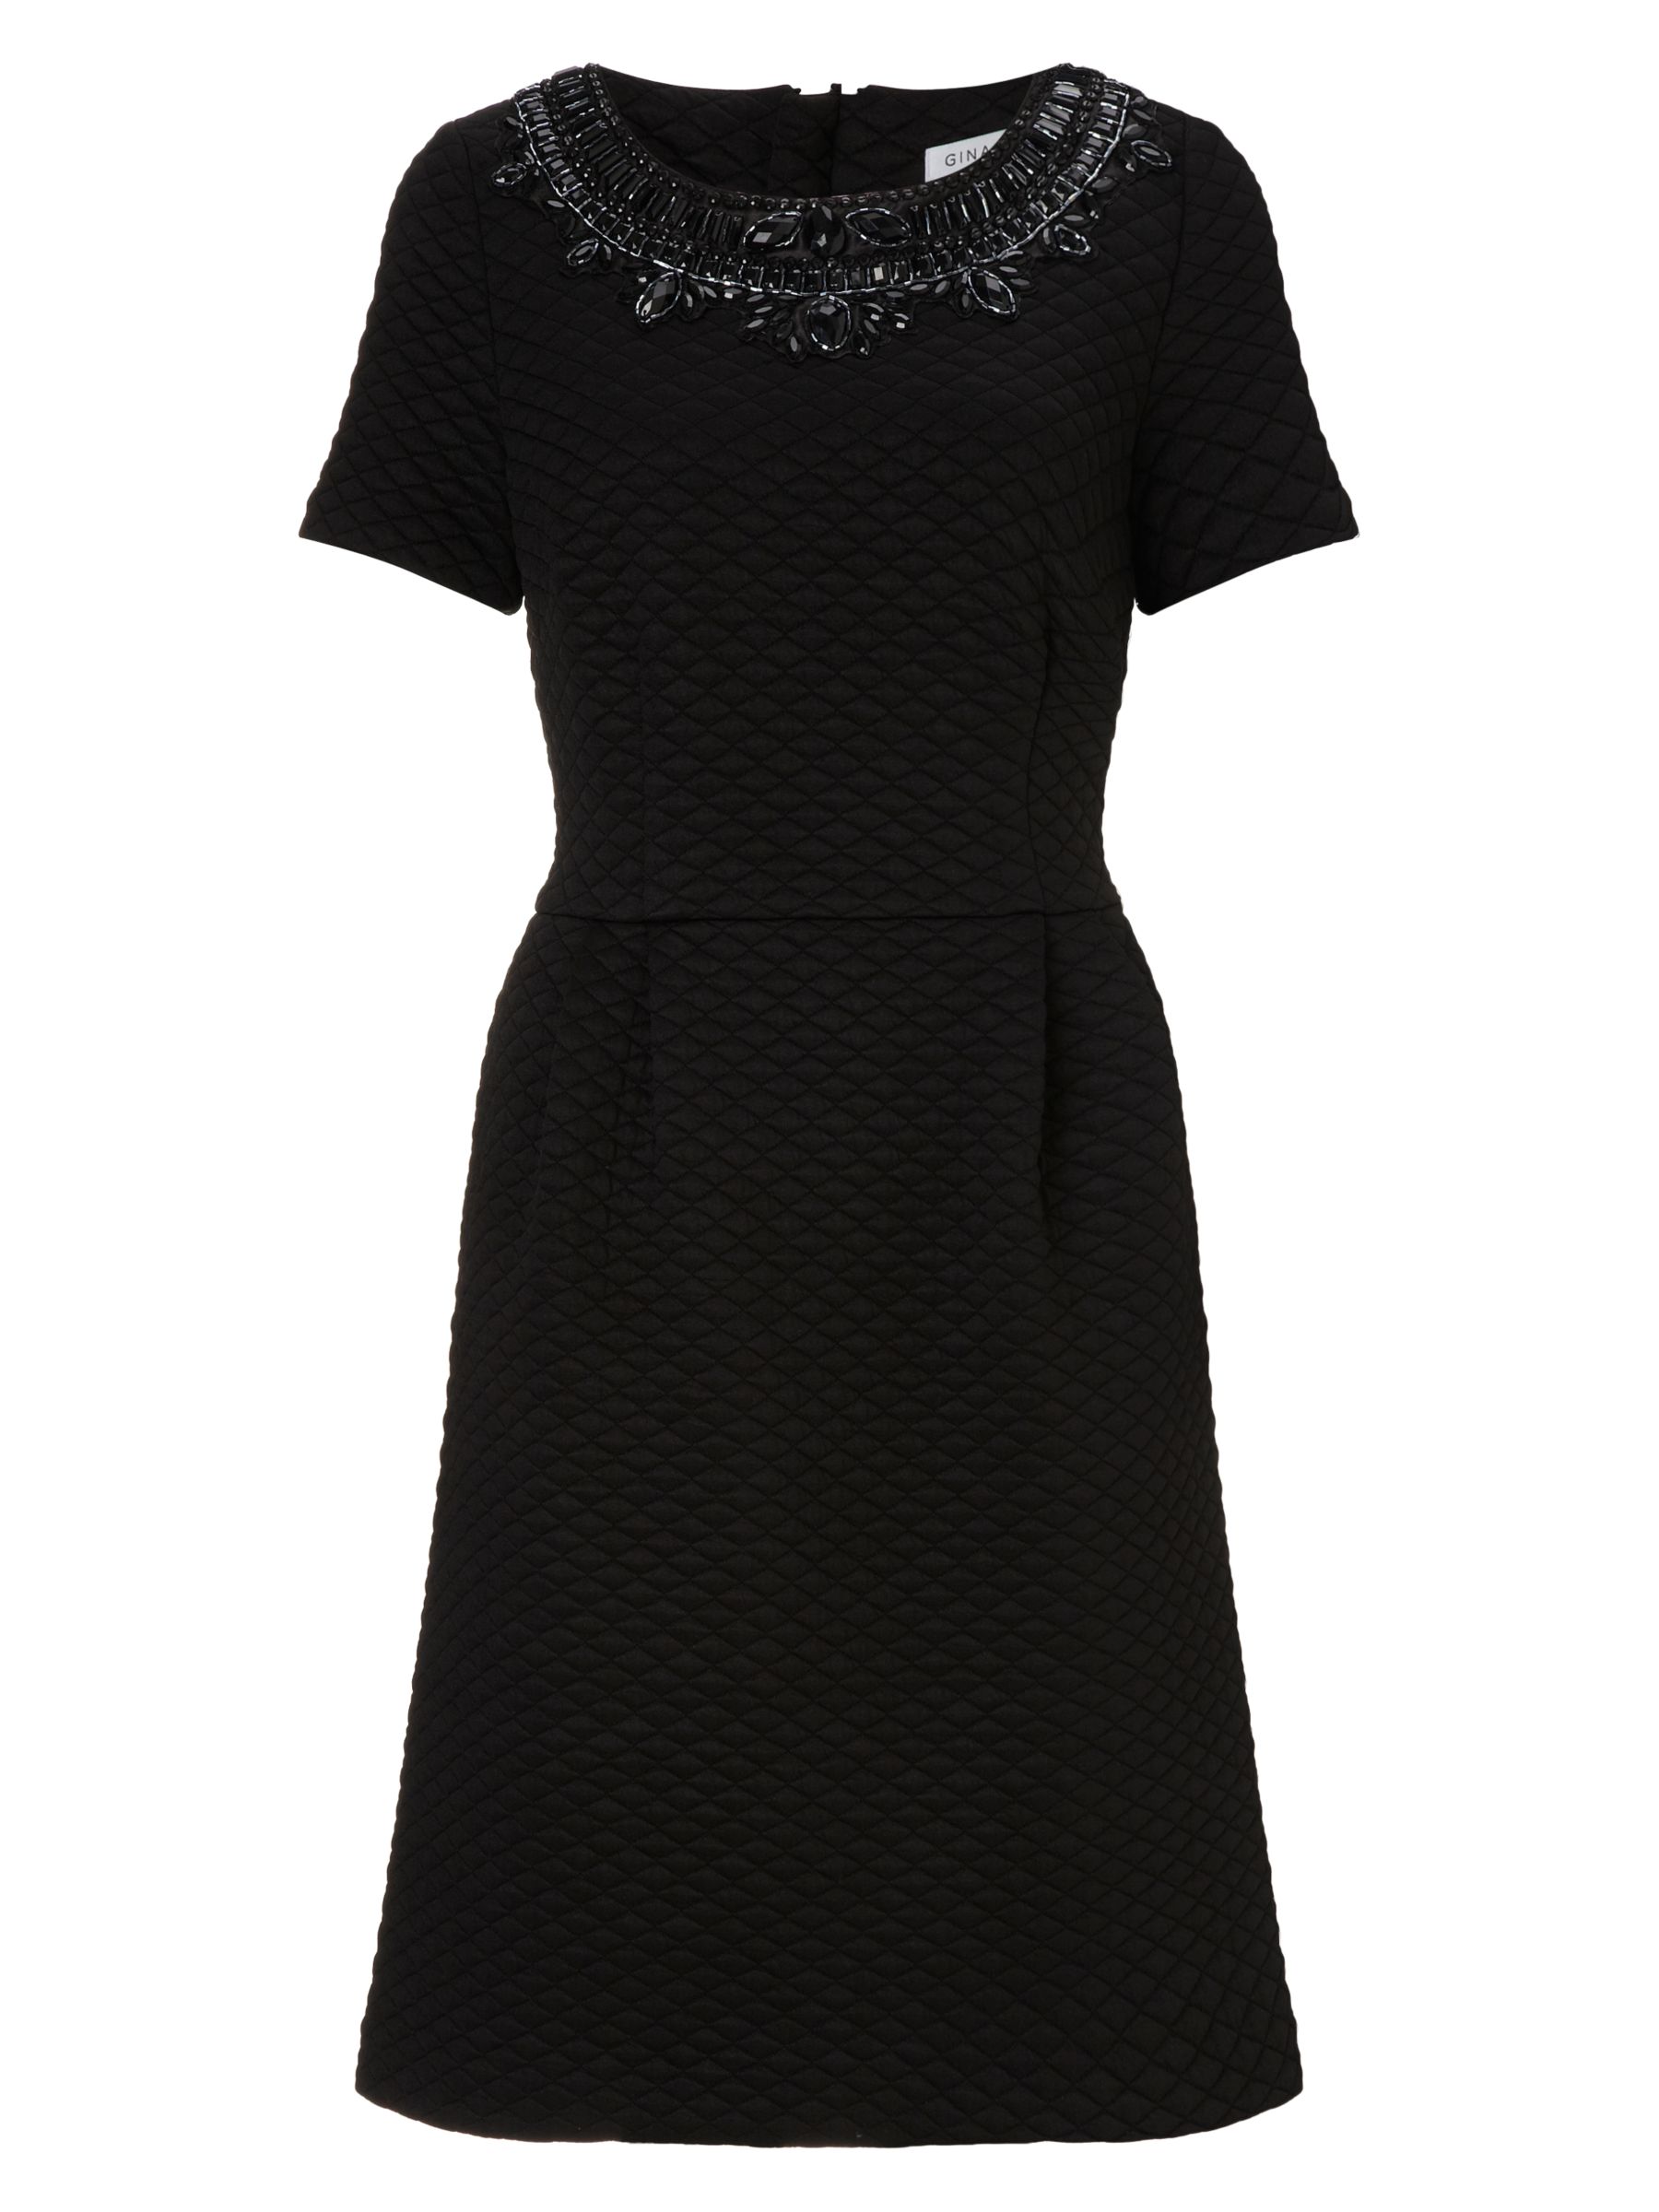 Gina Bacconi Diamond Stitch Jersey Dress, Black